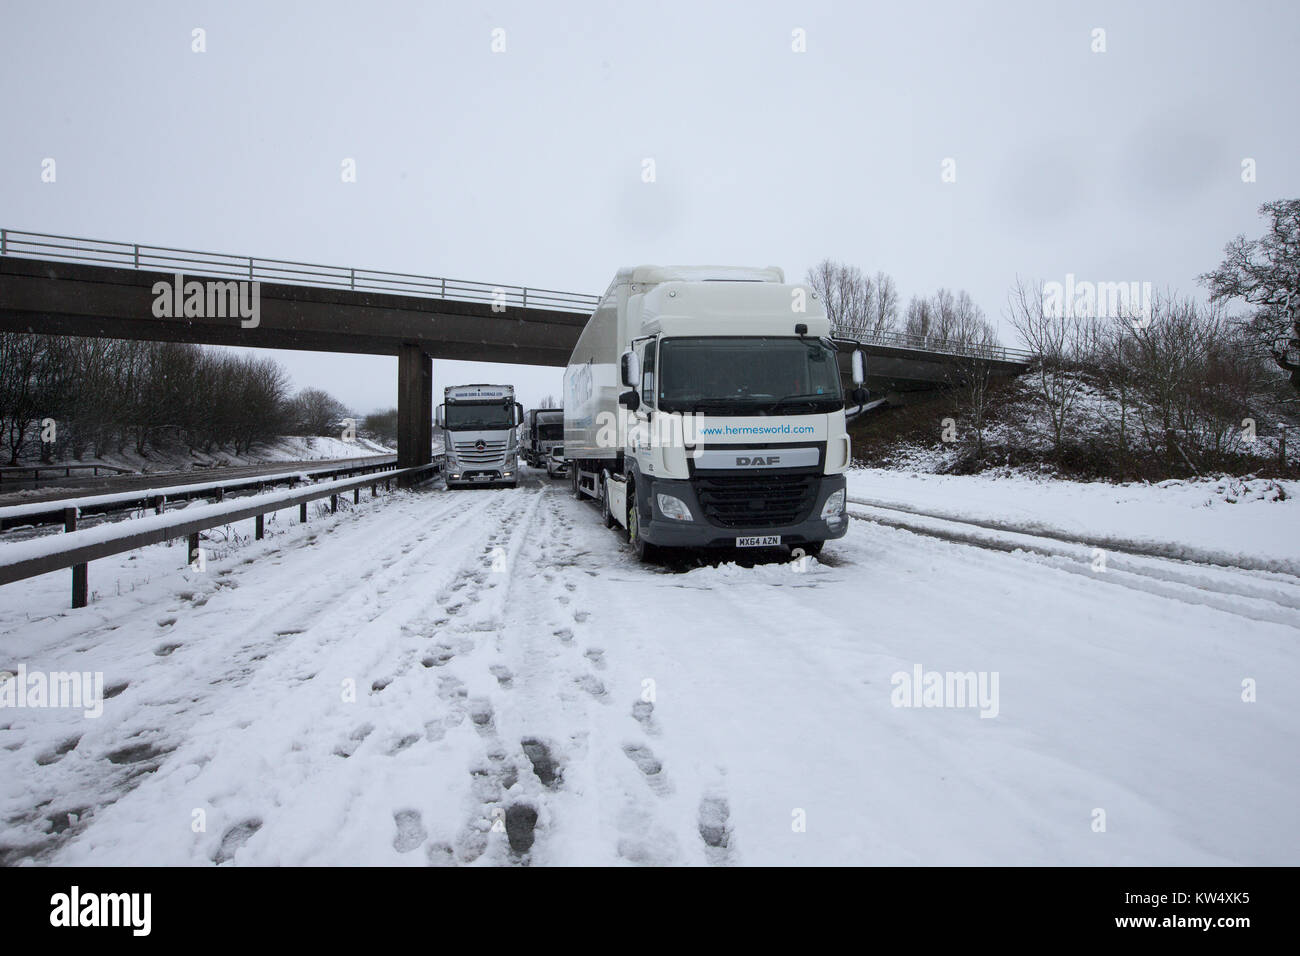 Autocarri e vetture che hanno bloccato sulla A14 vicino a Desborough,Northants, per otto ore a Mercoledì 27 dicembre dopo una notte di neve ha causato numerosi crash e chiuso la strada. Forze di polizia sono i driver di segnalazione di condizioni di pericolo sulle strade dopo la neve è scesa in parti del Regno Unito per tutta la notte. La M1 è stata bloccata al junction 19 dopo un incidente di camion, mentre la polizia ha detto che vi era stato 'multiple collisioni' sulla A14 nel Northamptonshire. Il Met Office ha rilasciato le avvertenze per il ghiaccio per il nord della Scozia, Irlanda del Nord e del nord-est dell'Inghilterra e neve per il Galles e parti dell'Inghilterra. Foto Stock